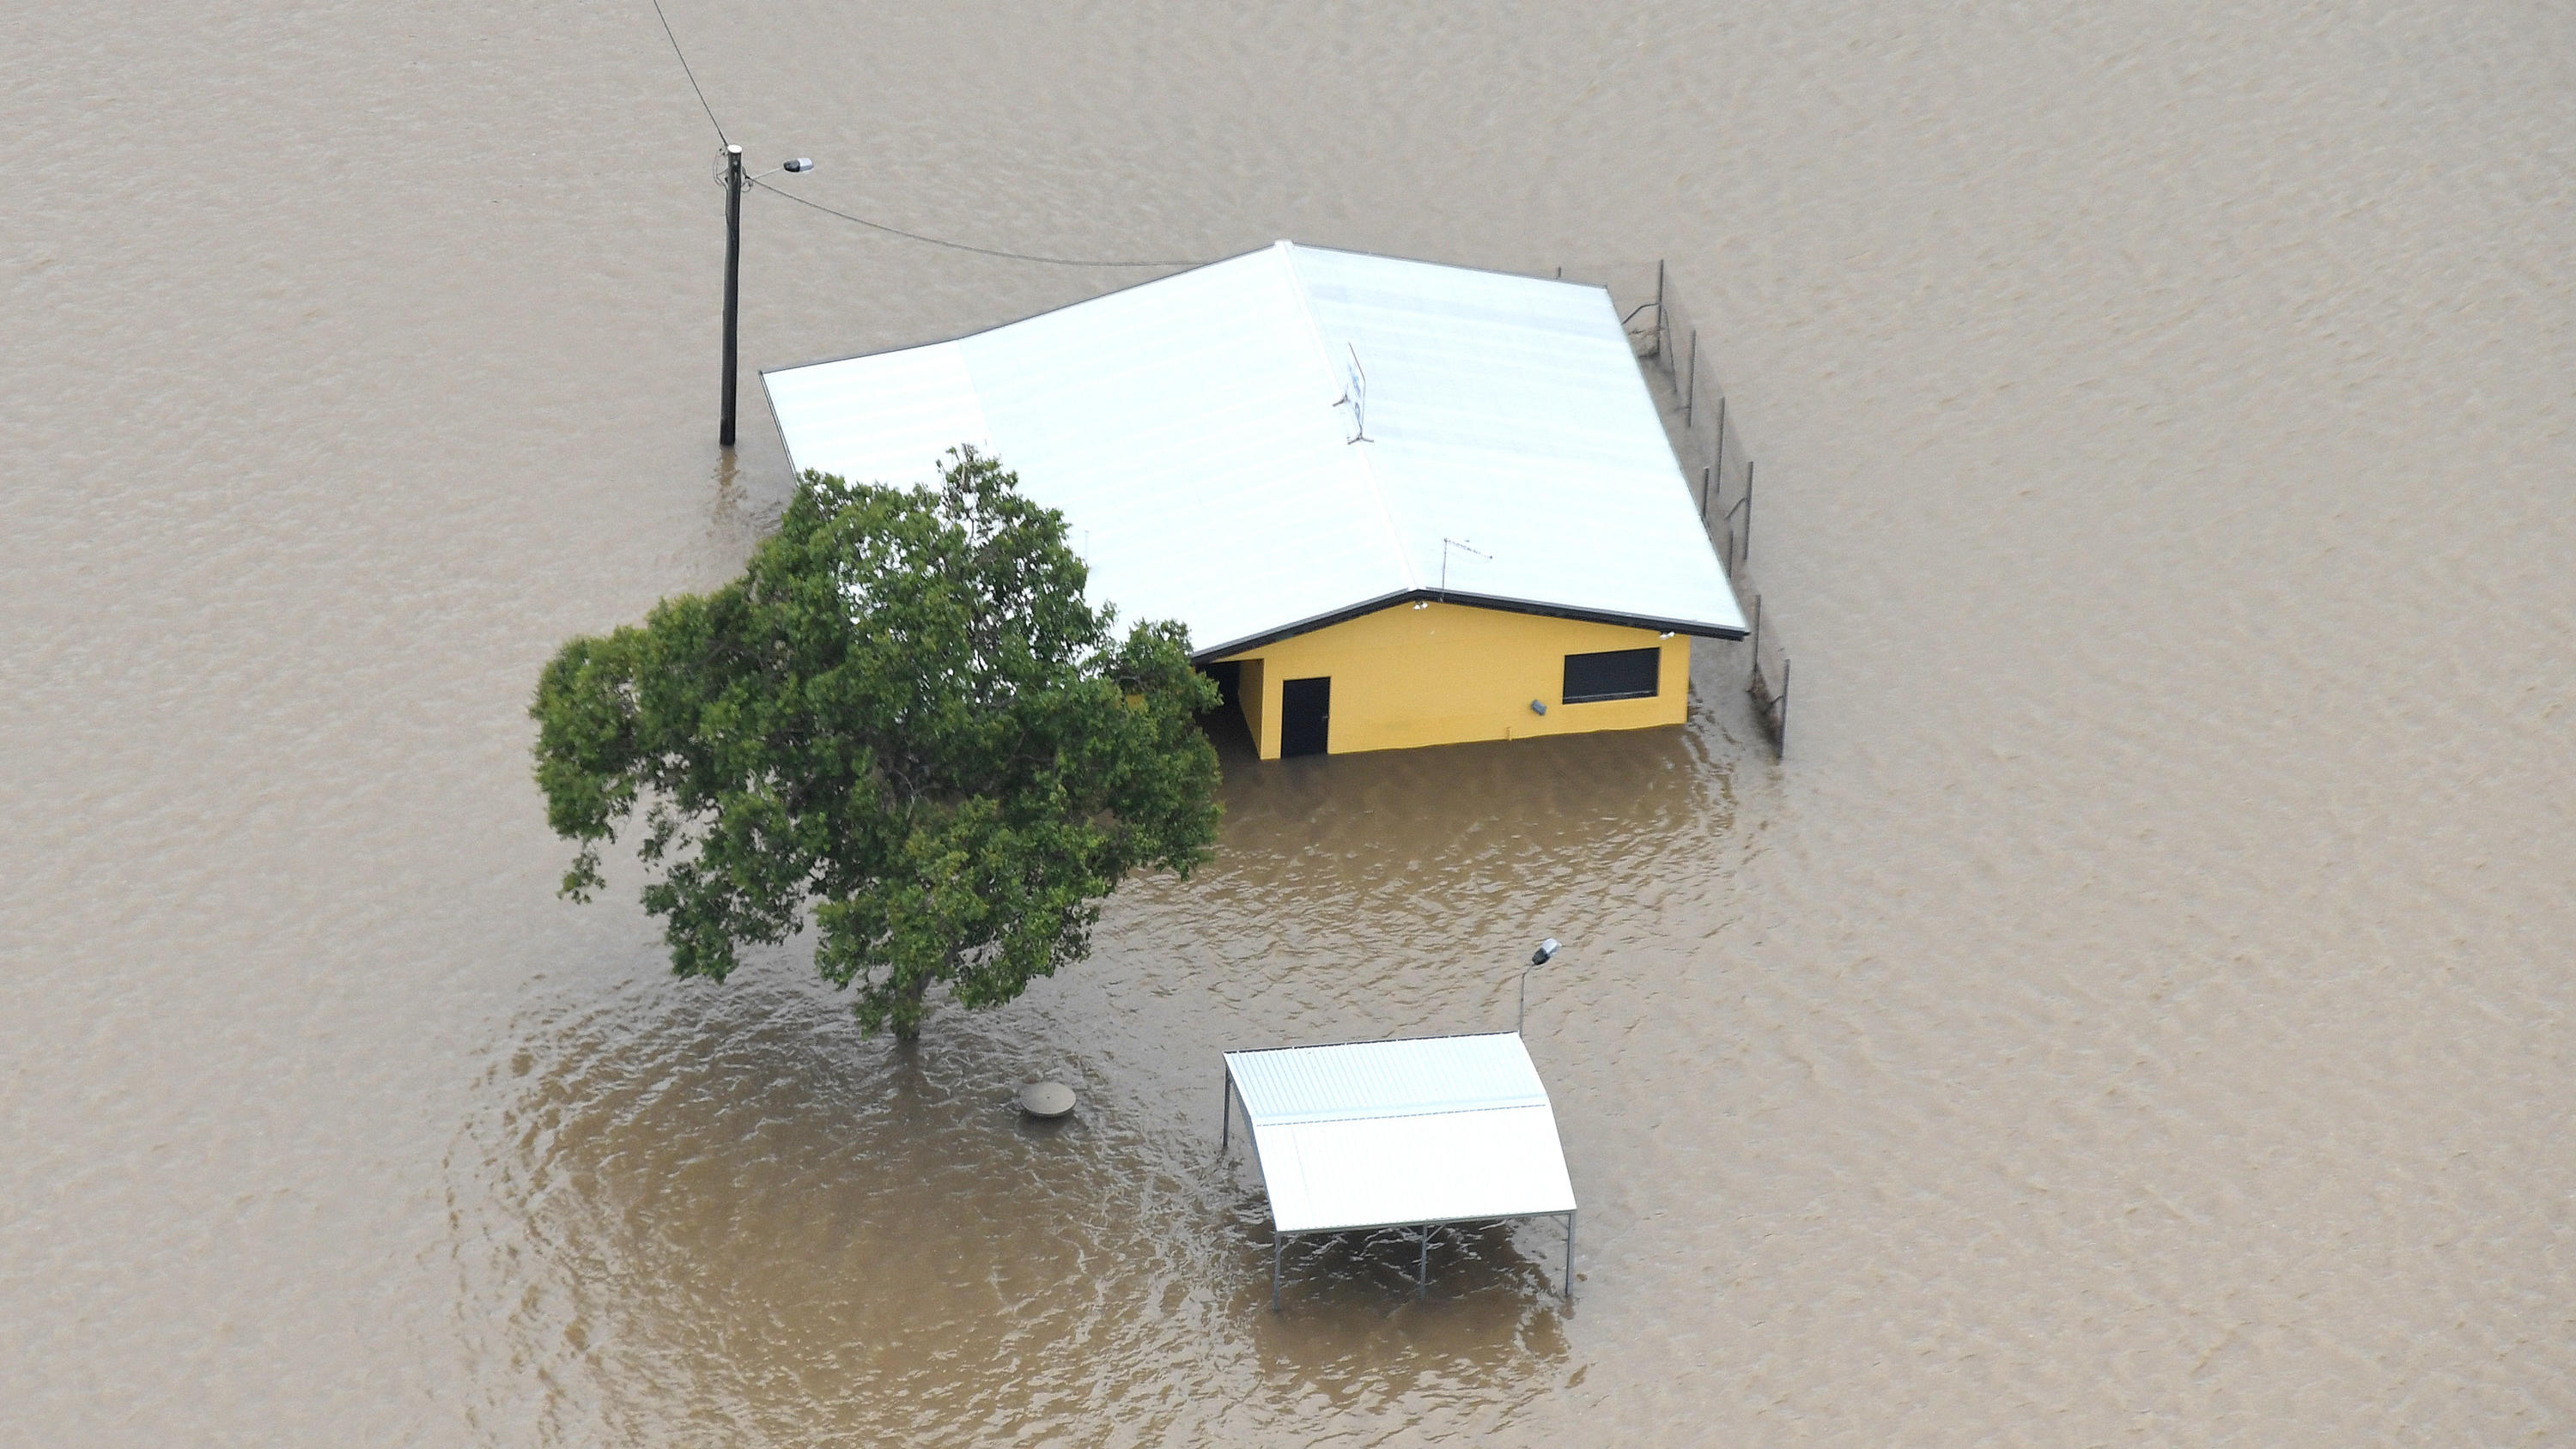 11.03.2018, Australien, Ingham: Häuser in Ingham im Bundesstaat North Queensland stehen unter Wasser. Die Gegend ist in den lettzen Tagen von heftigen Regenfällen geflutet worden. Foto: Dan Peled/AAP/dpa +++ dpa-Bildfunk +++